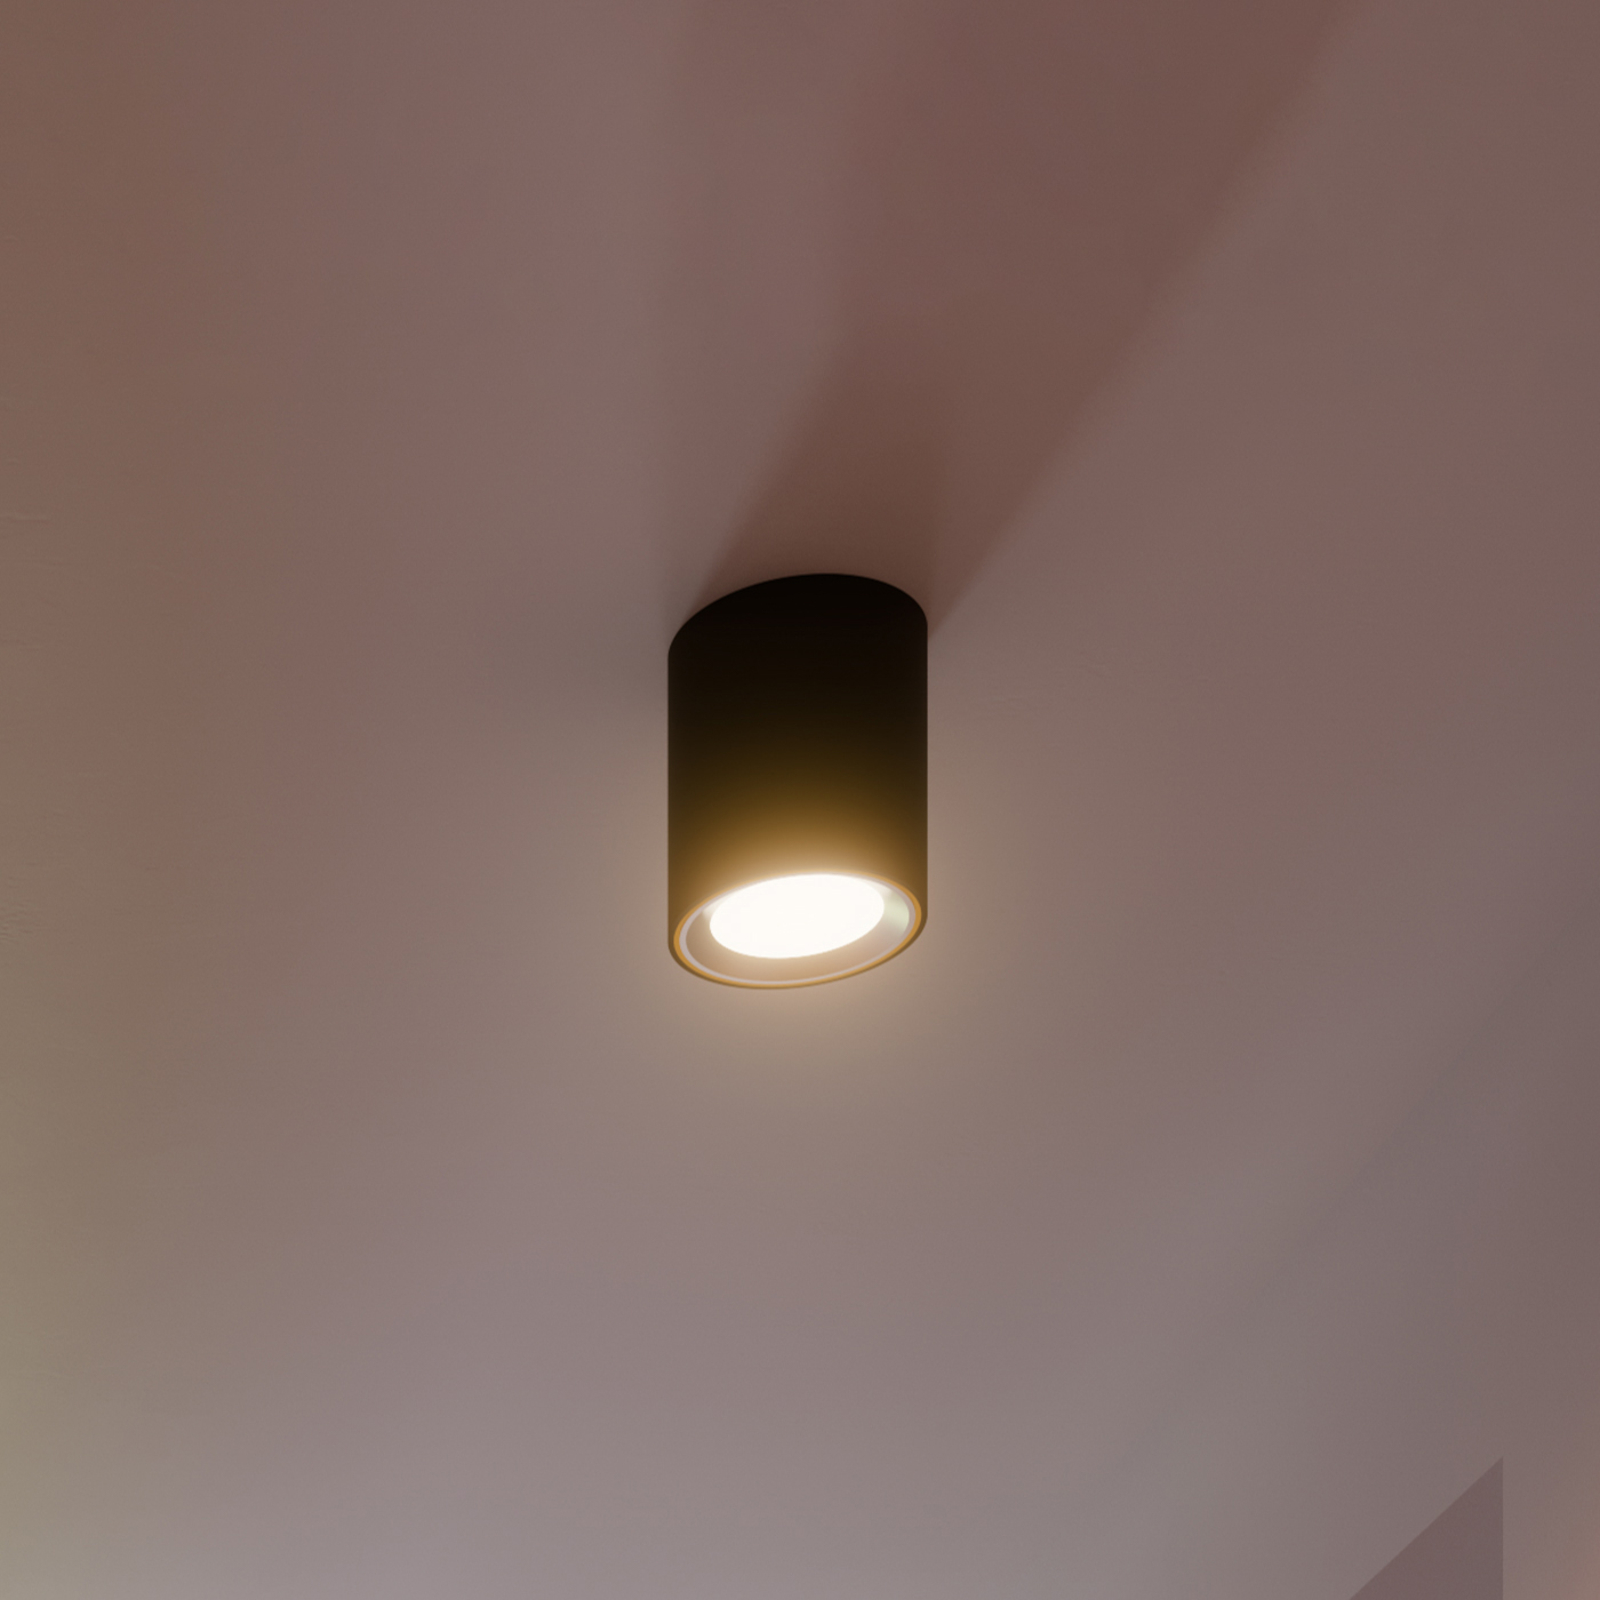 Landon Smart LED downlight, black, height 14 cm